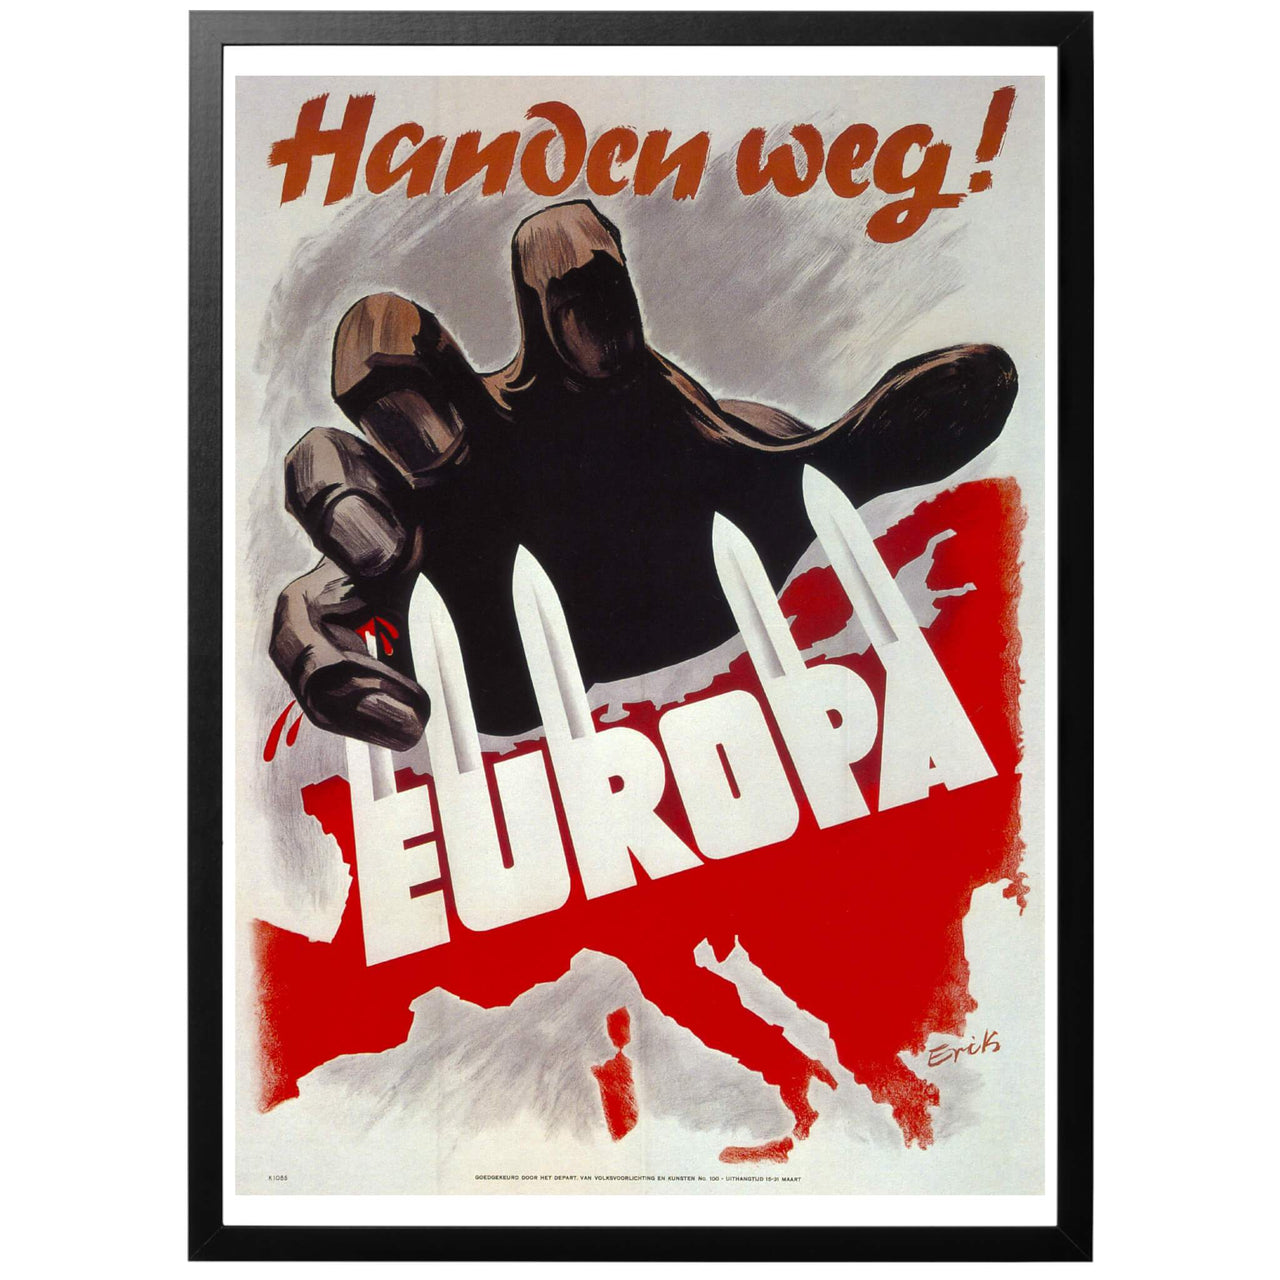 Handen weg! - EUROPA Bort med handen! EUROPA" Nederländsk WWII affisch. Ett aggressivt tryck publicerat i Nederländerna 1943. Ett befäst Europa "Festnung Europa" håller medelst bajonetter undan den röda faran.